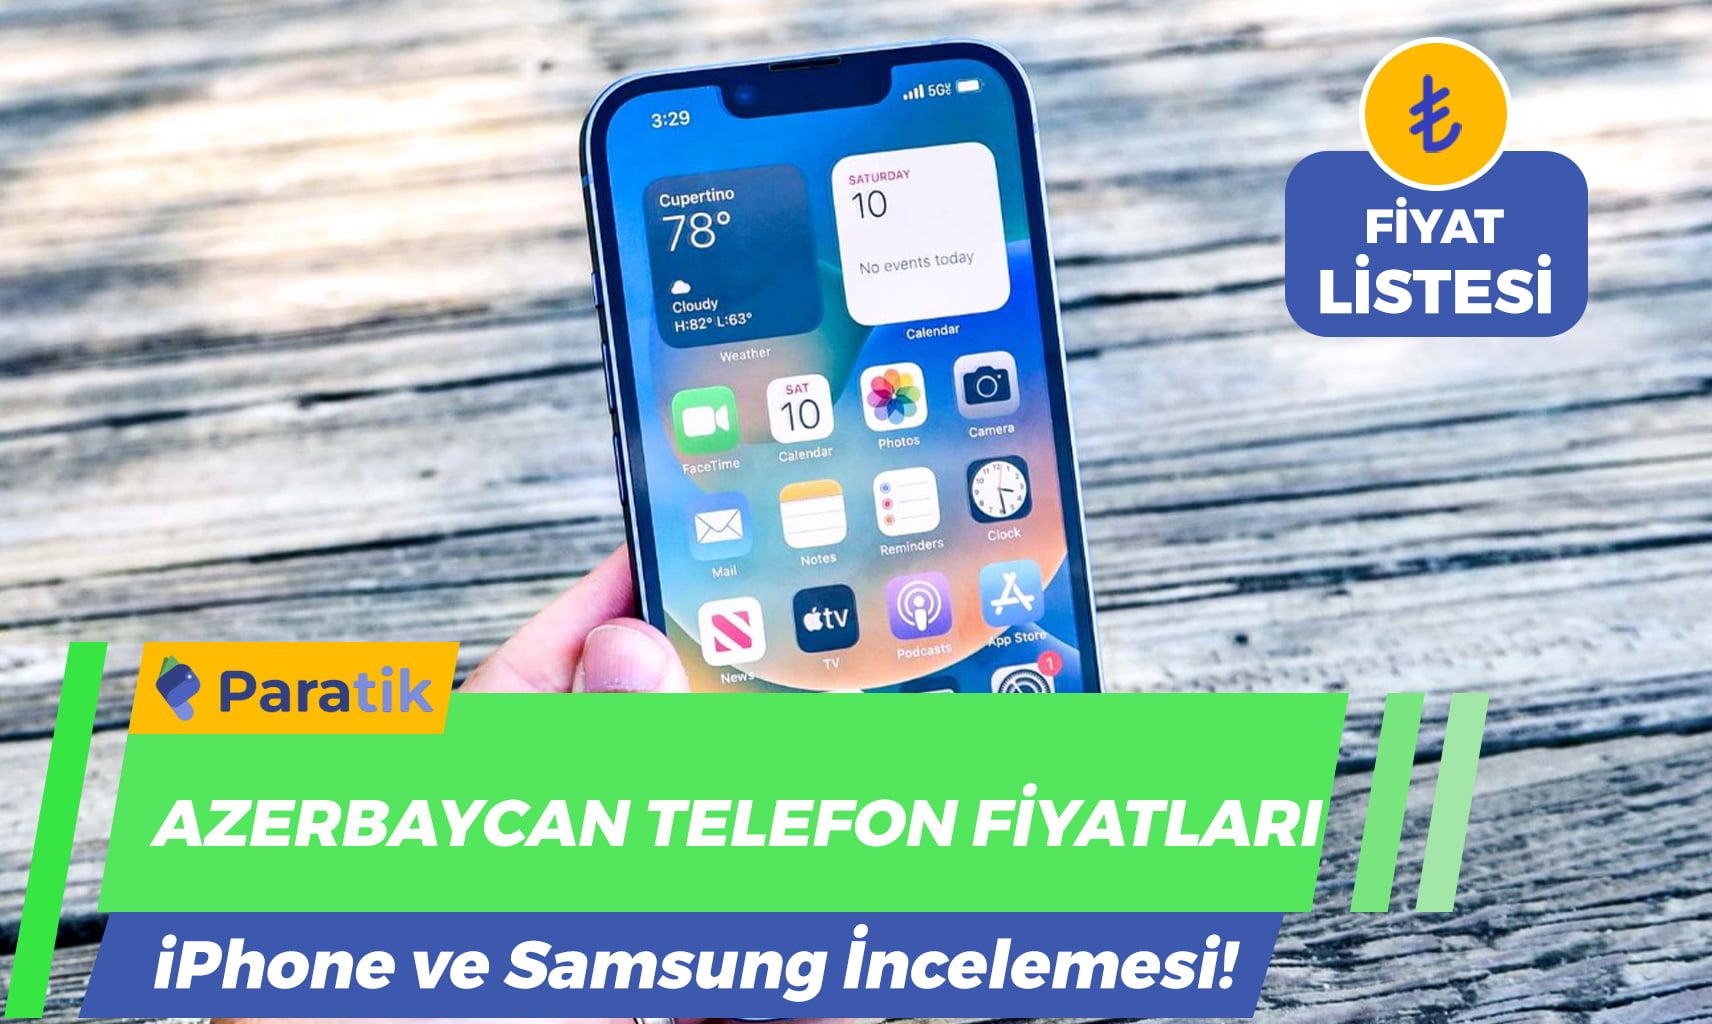 Azerbaycan Telefon Fiyatları